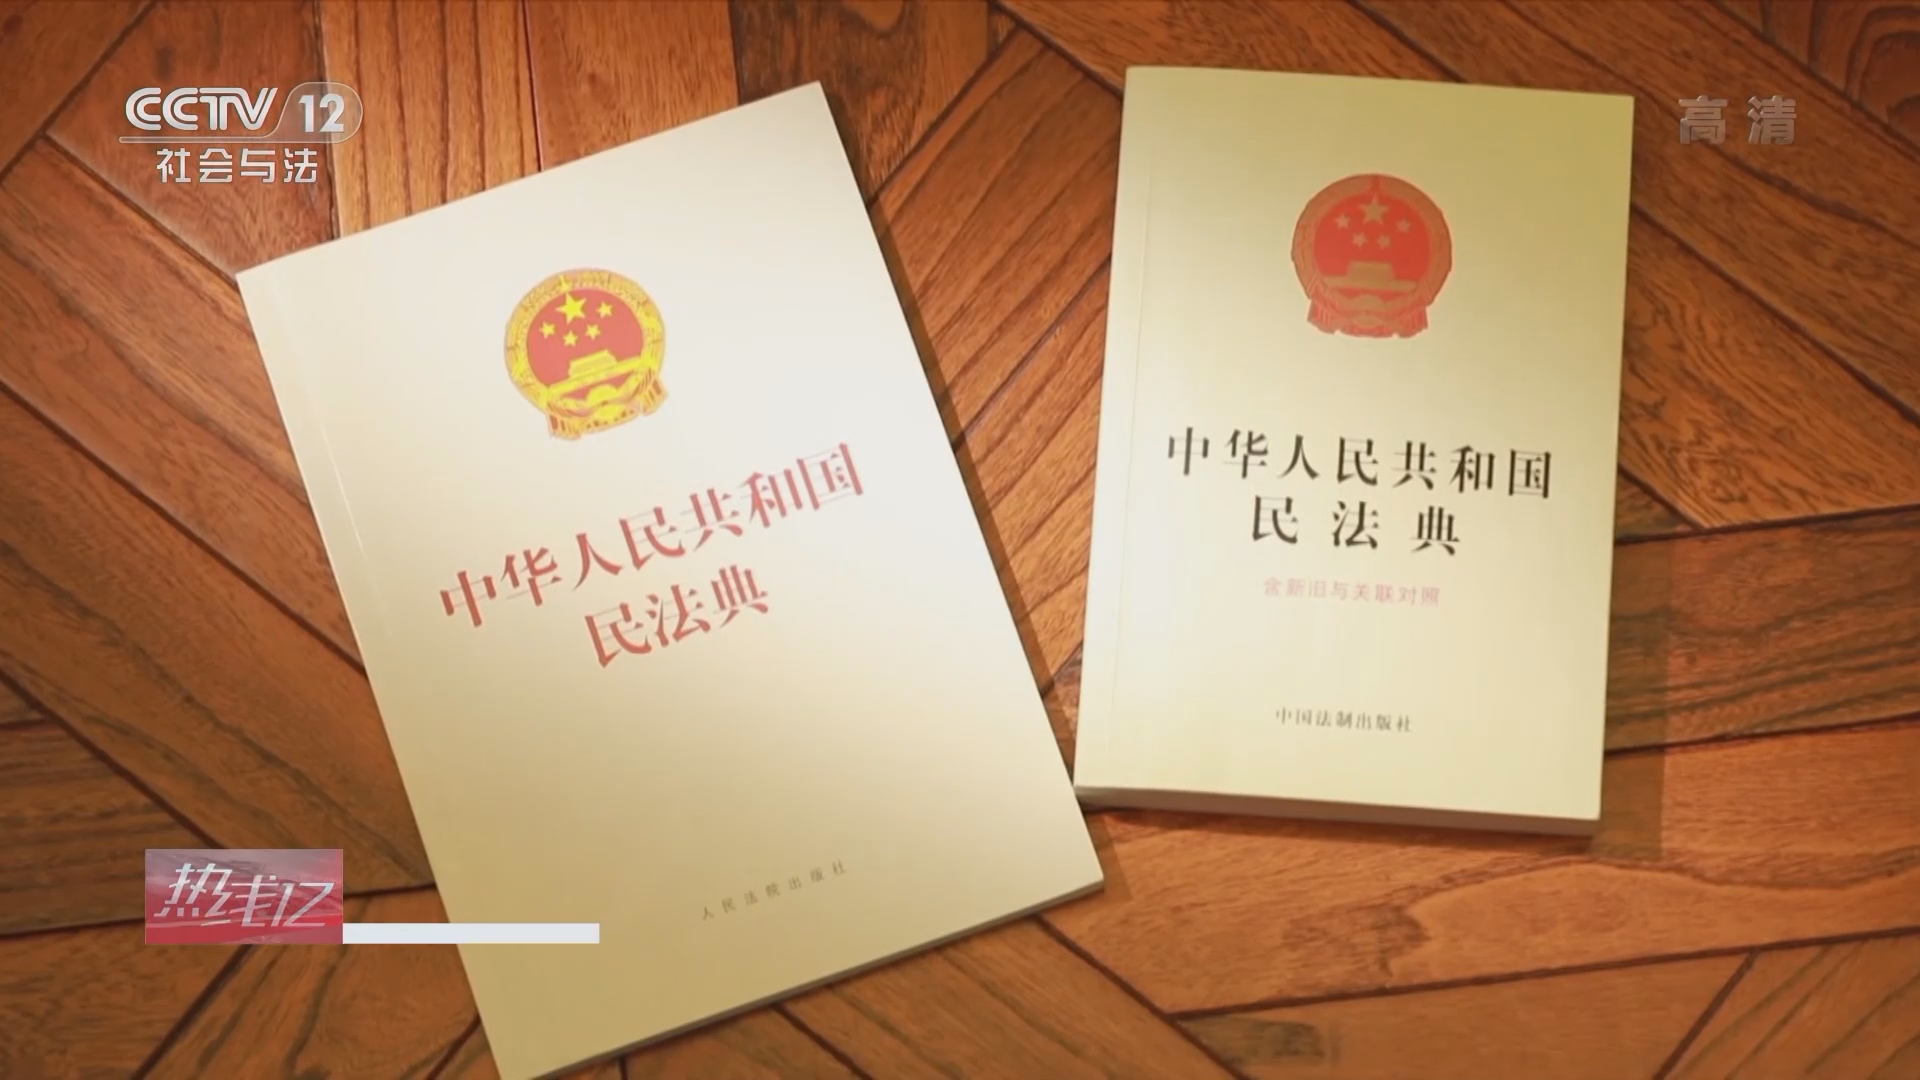 采取多种形式宣传《中华人民共和国民法典》